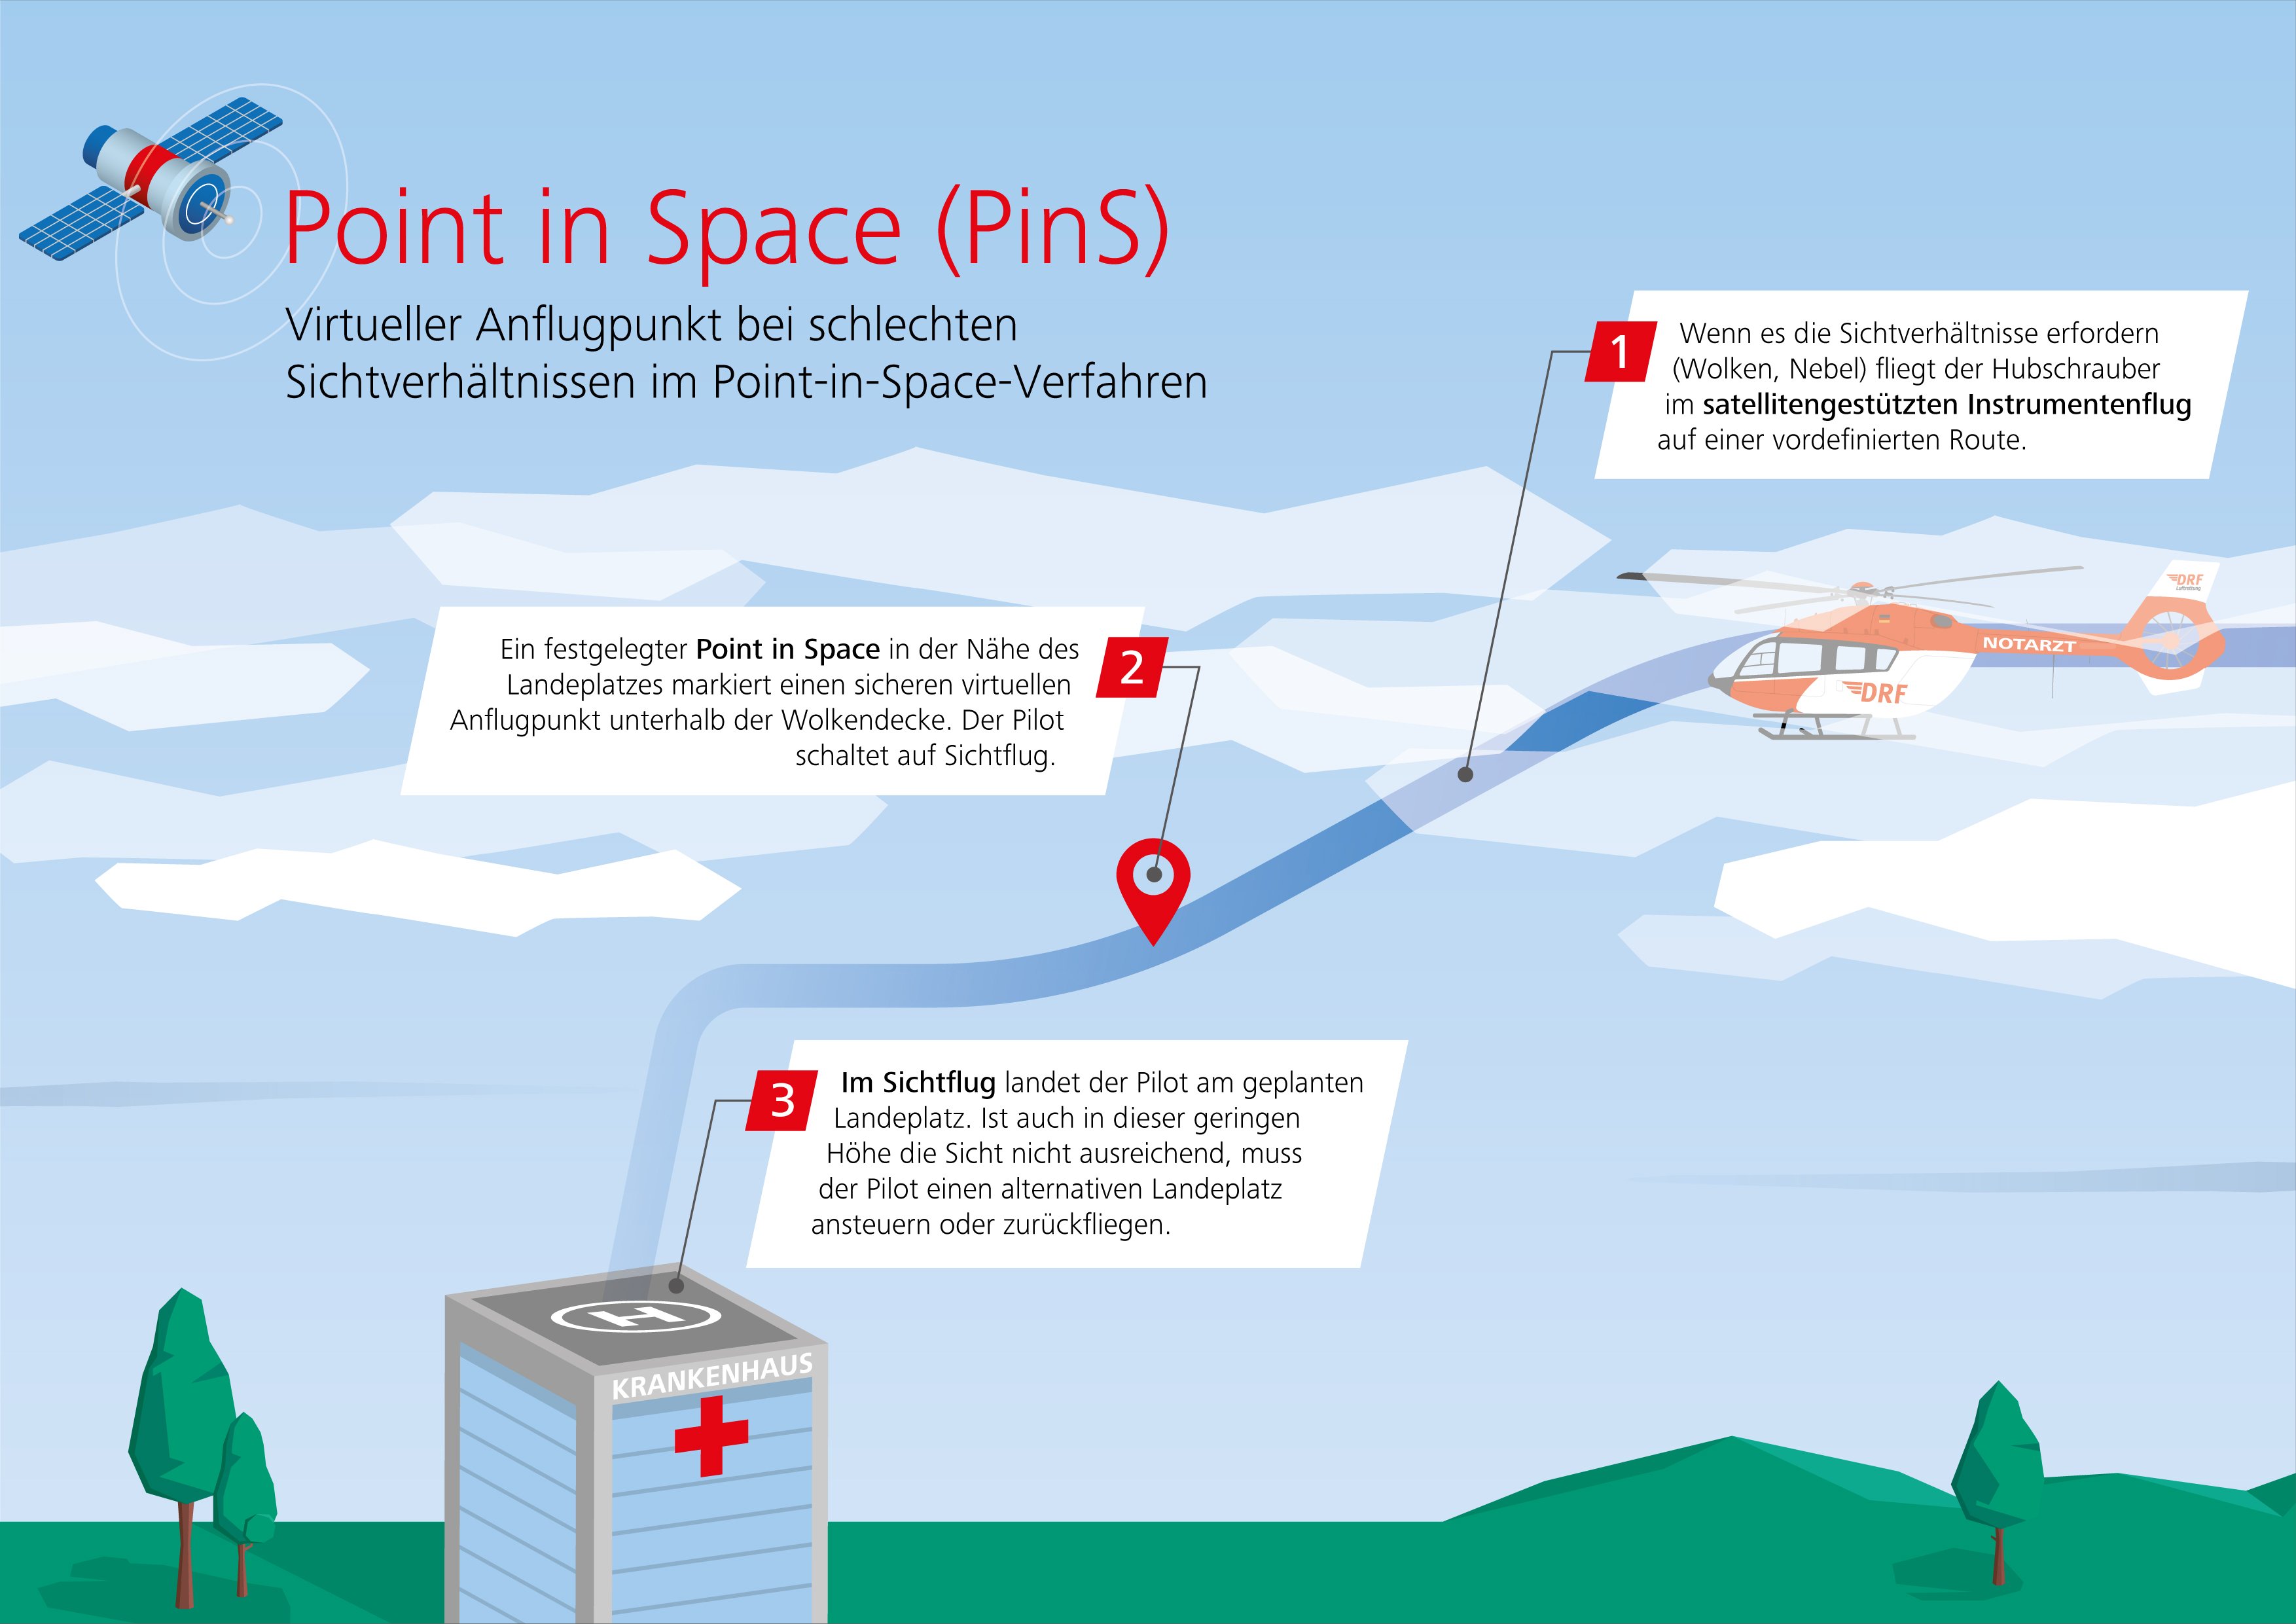 Eine Infografik zeigt den Ablauf eines Landeanflugs mittels Point in Space-Verfahren